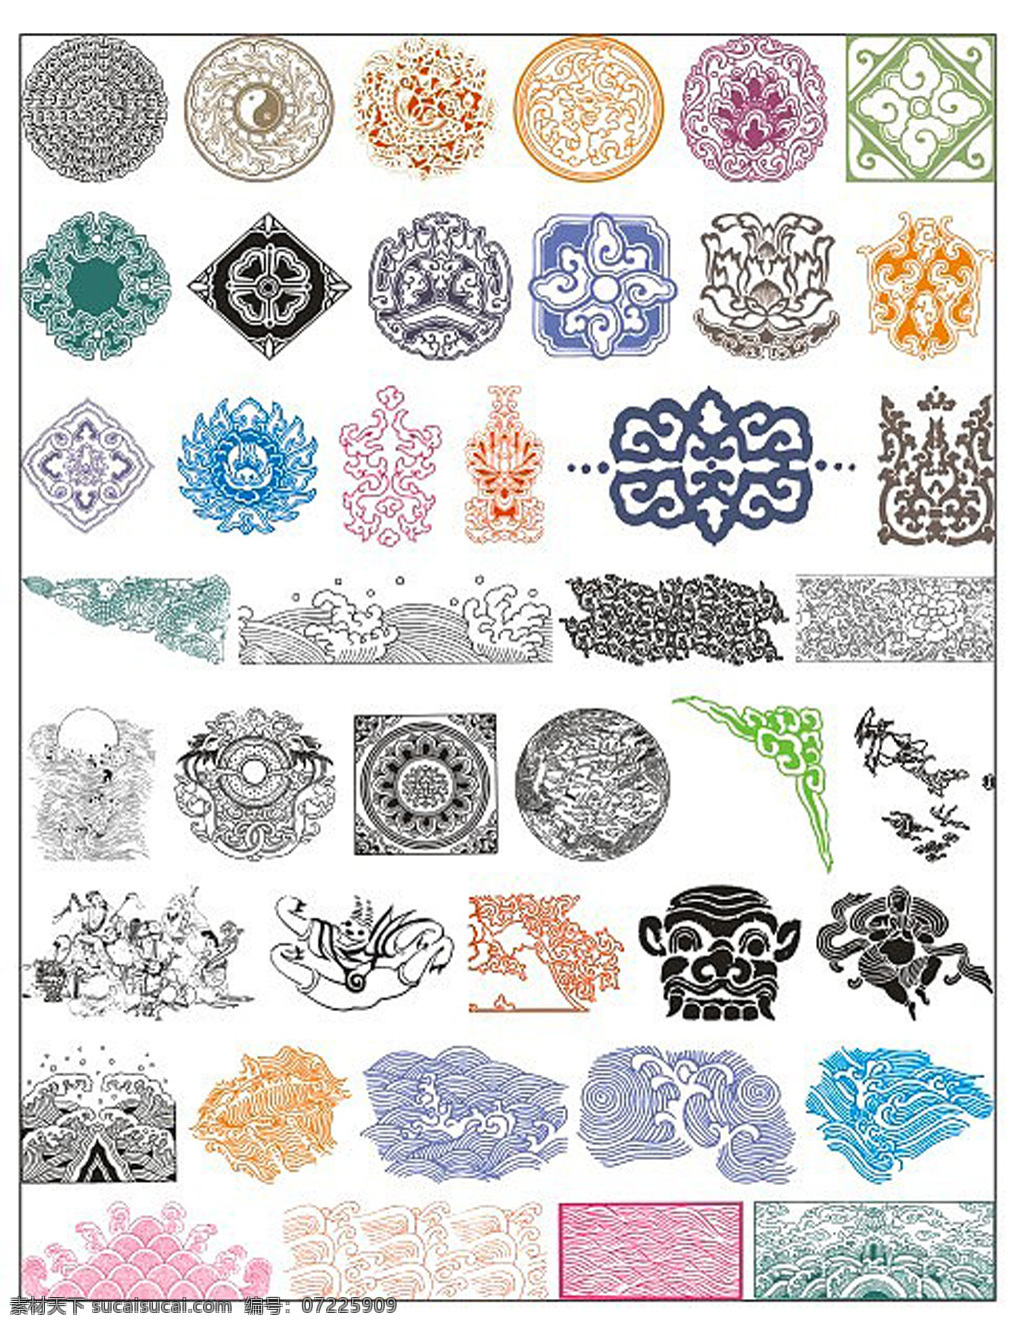 古典花纹纹样 古代花纹 海水纹样 浪潮 太极 复杂花纹 八仙 神兽